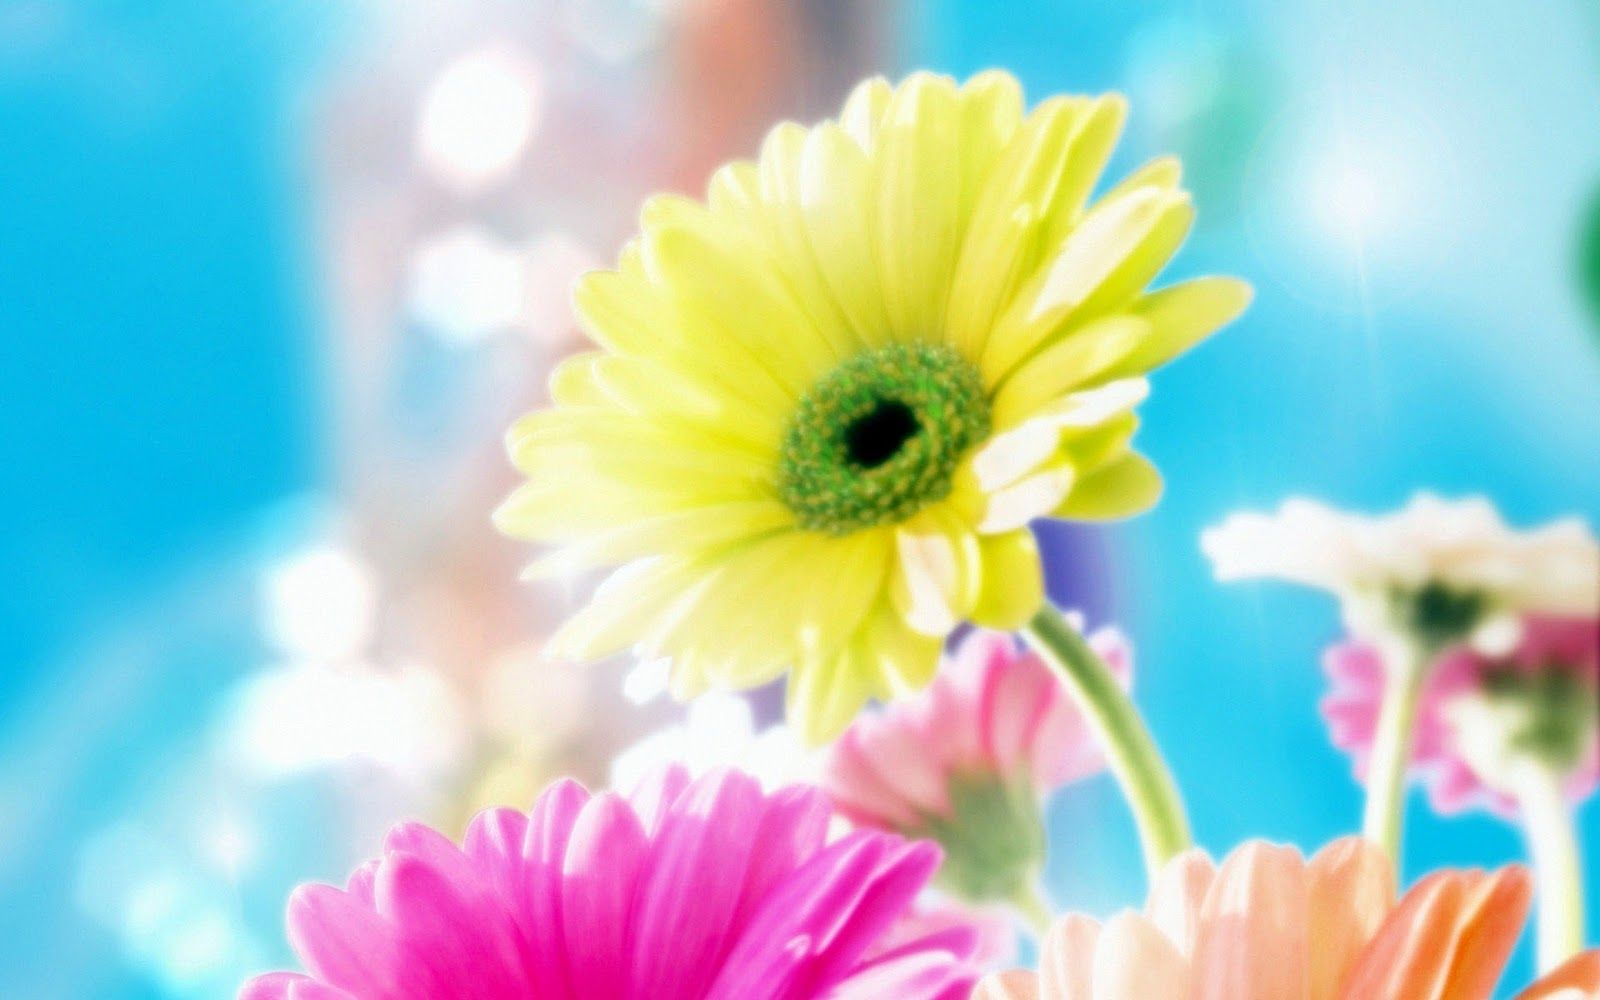 Sweet Flowers Delights: los fondos de pantalla de flores más hermosos